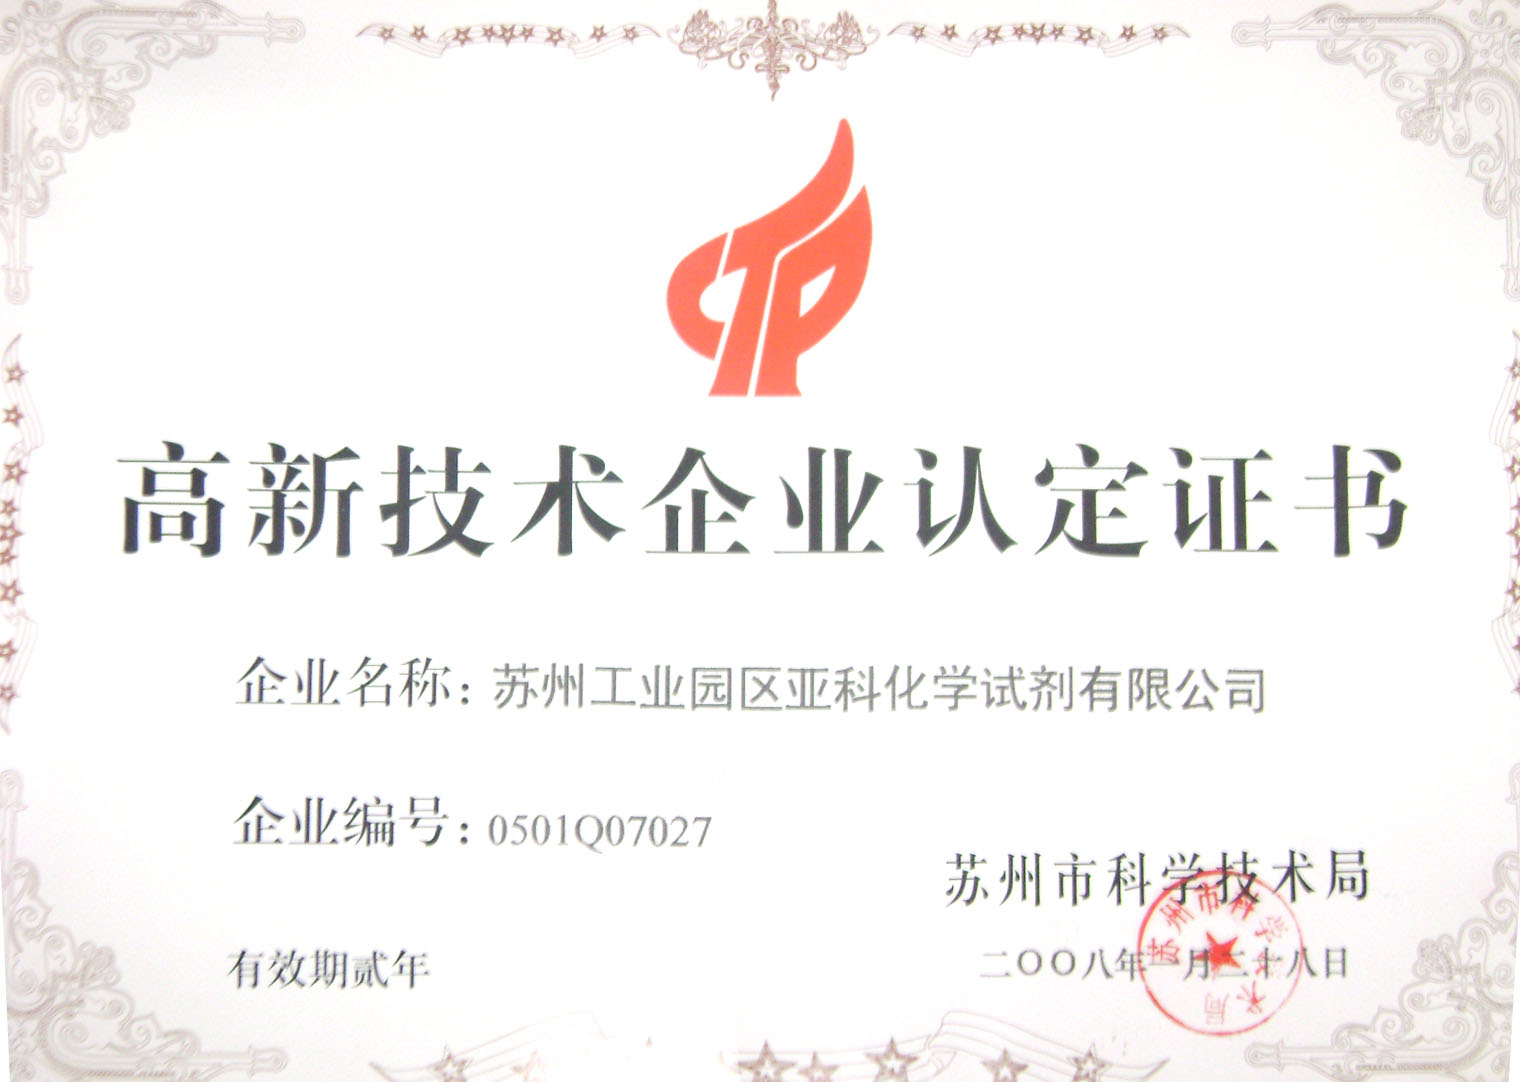 2008年苏州工业园区亚科化学试剂有限公司荣获高新技术企业认定证书